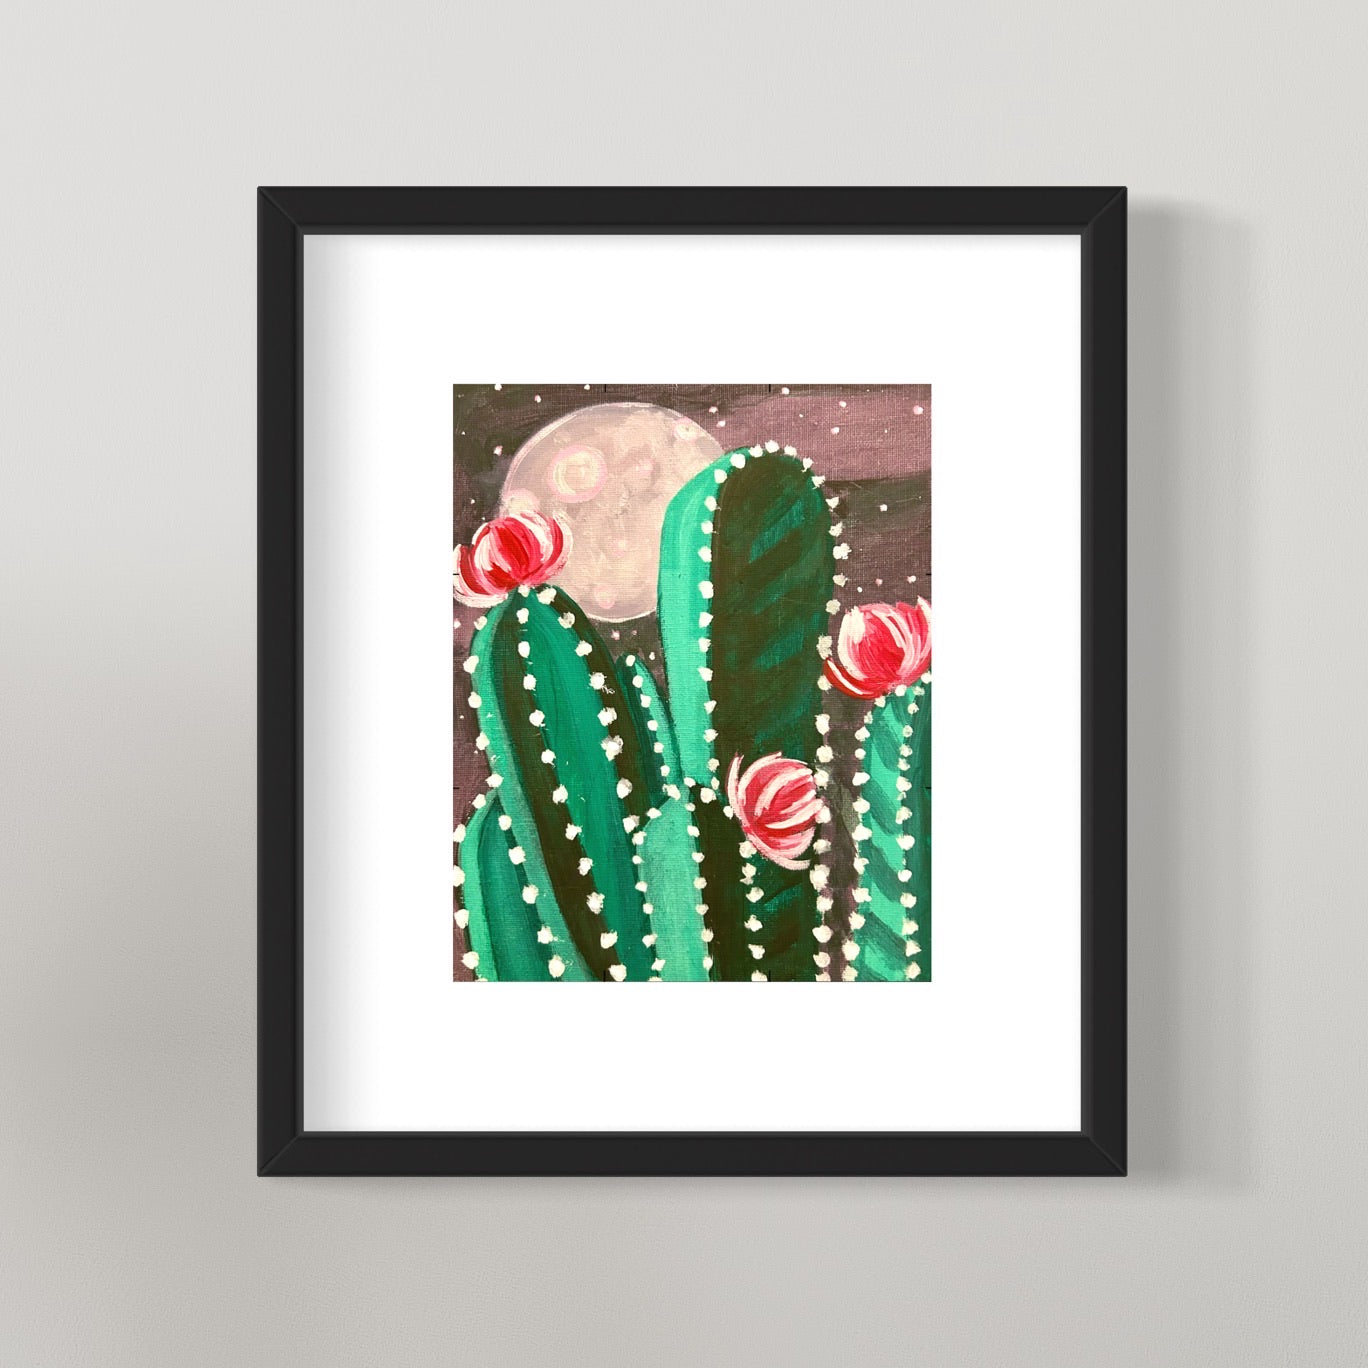 photo of framed full moon over cactus Desert Night painting